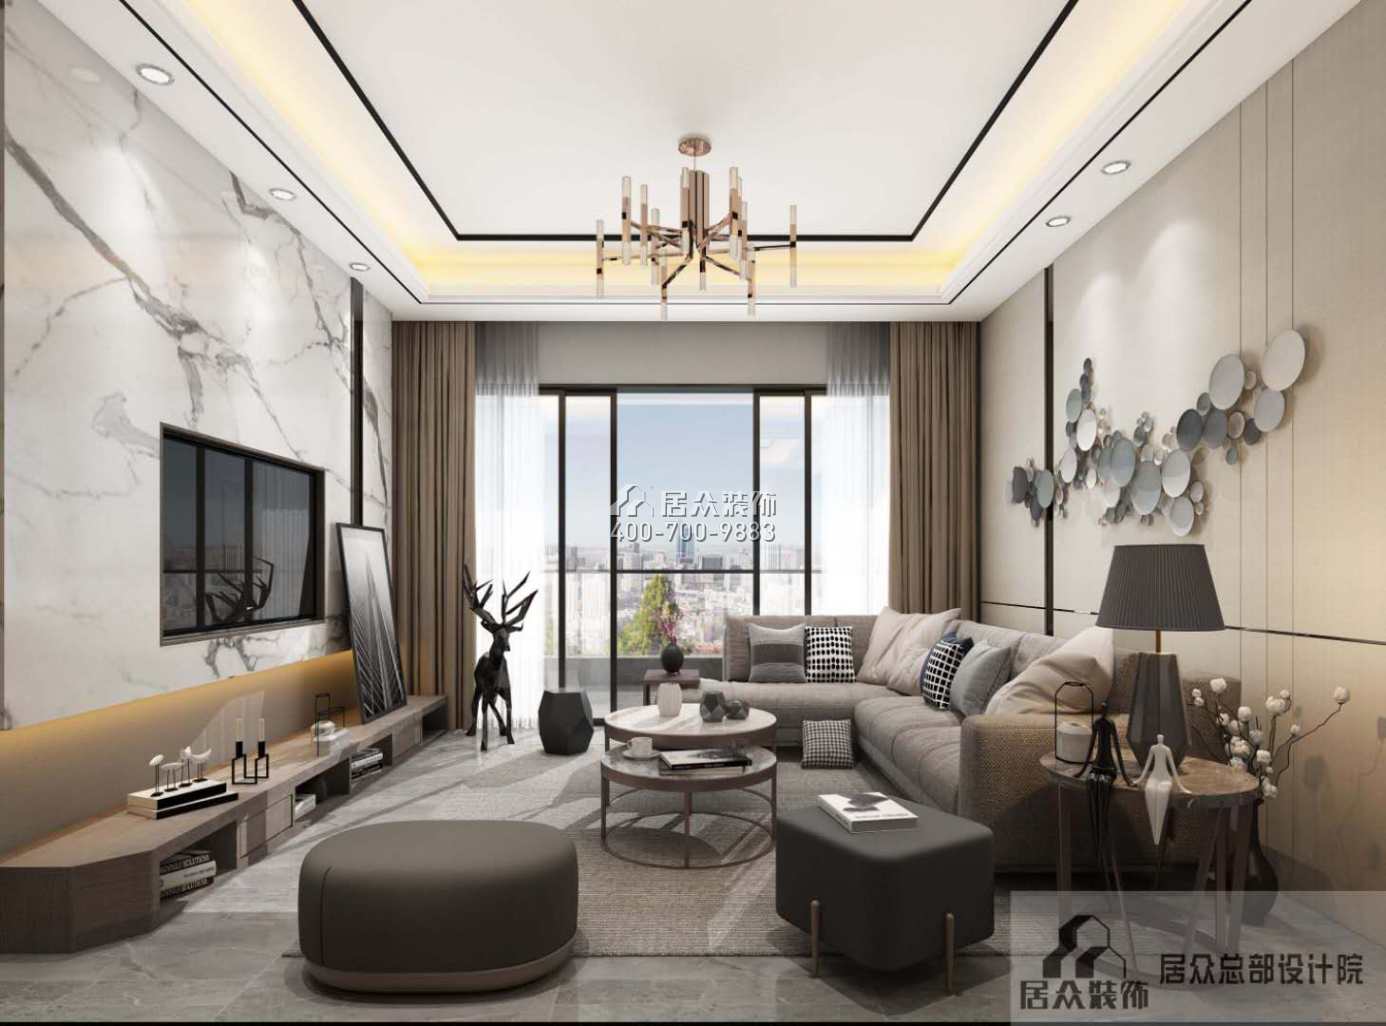 銀湖藍山潤園二期120平方米現代簡約風格平層戶型客廳裝修效果圖